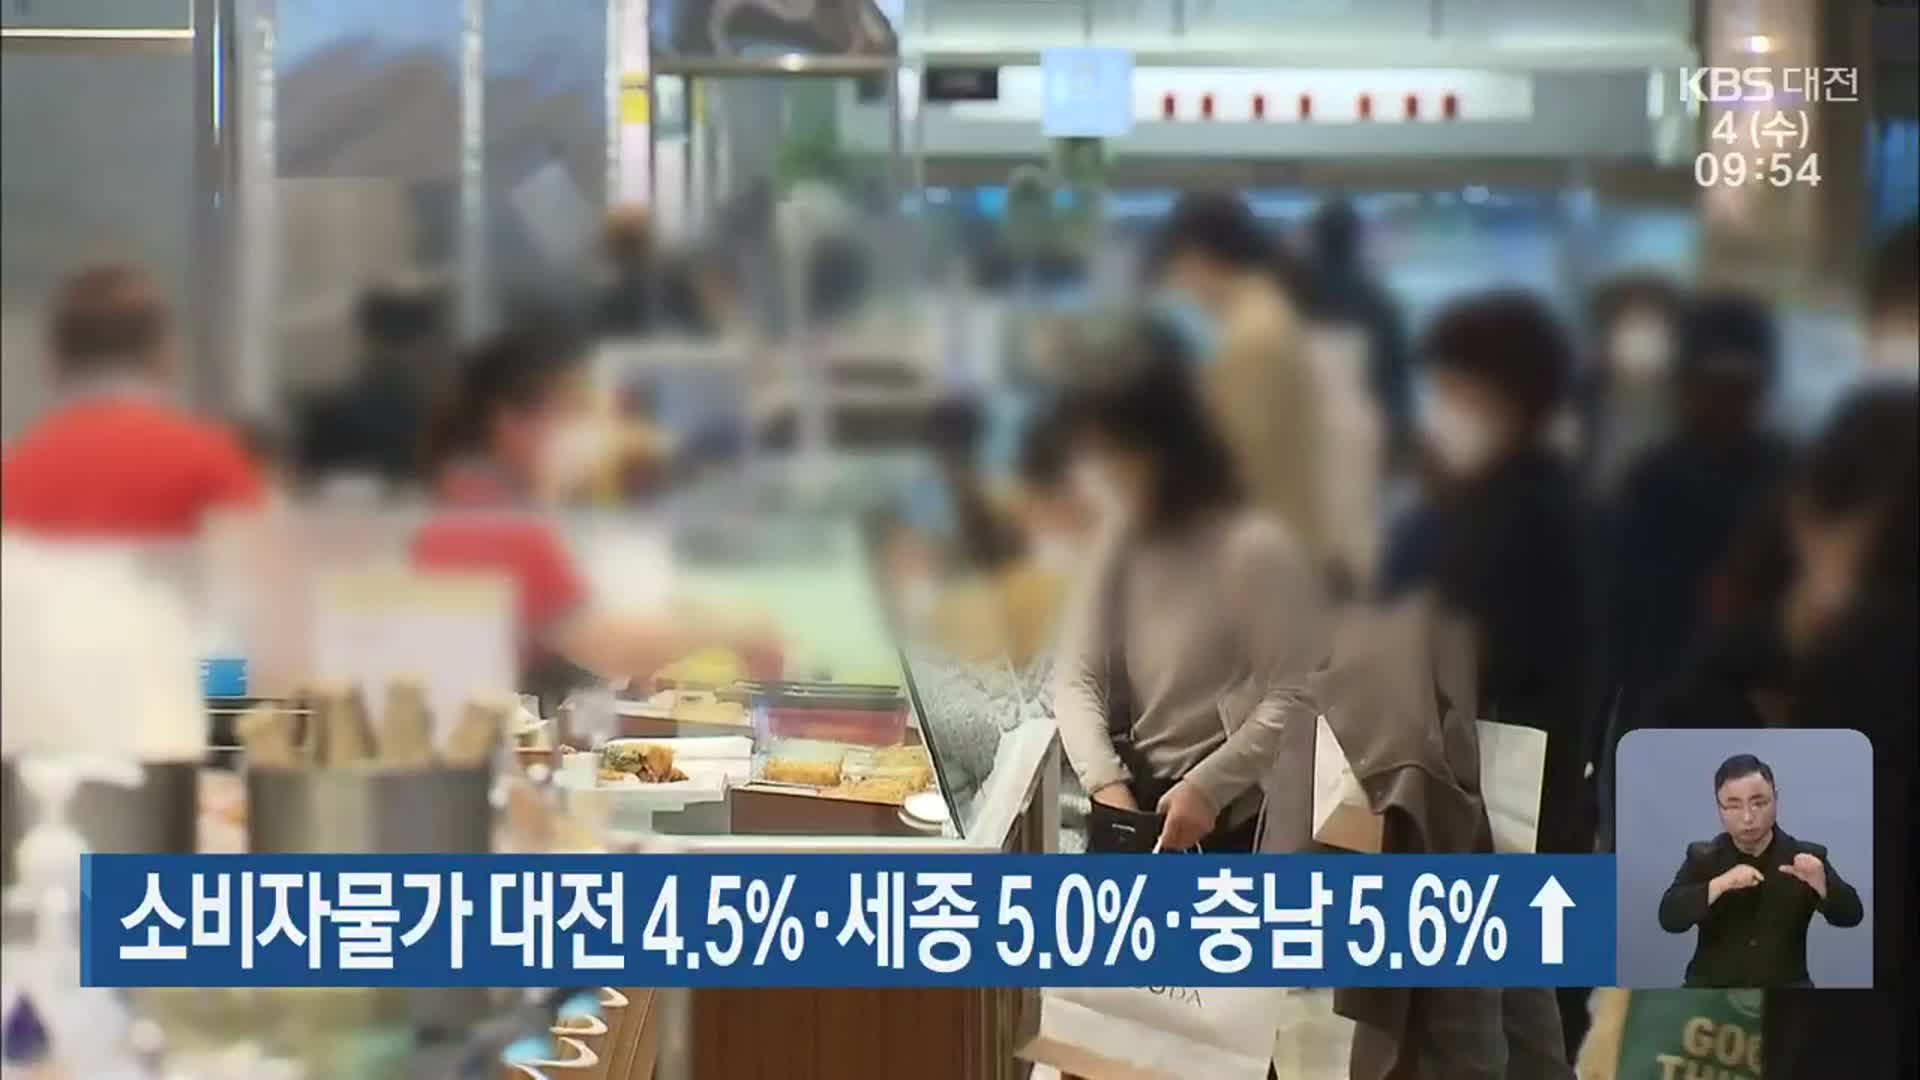 소비자물가 대전 4.5%·세종 5.0%·충남 5.6%↑